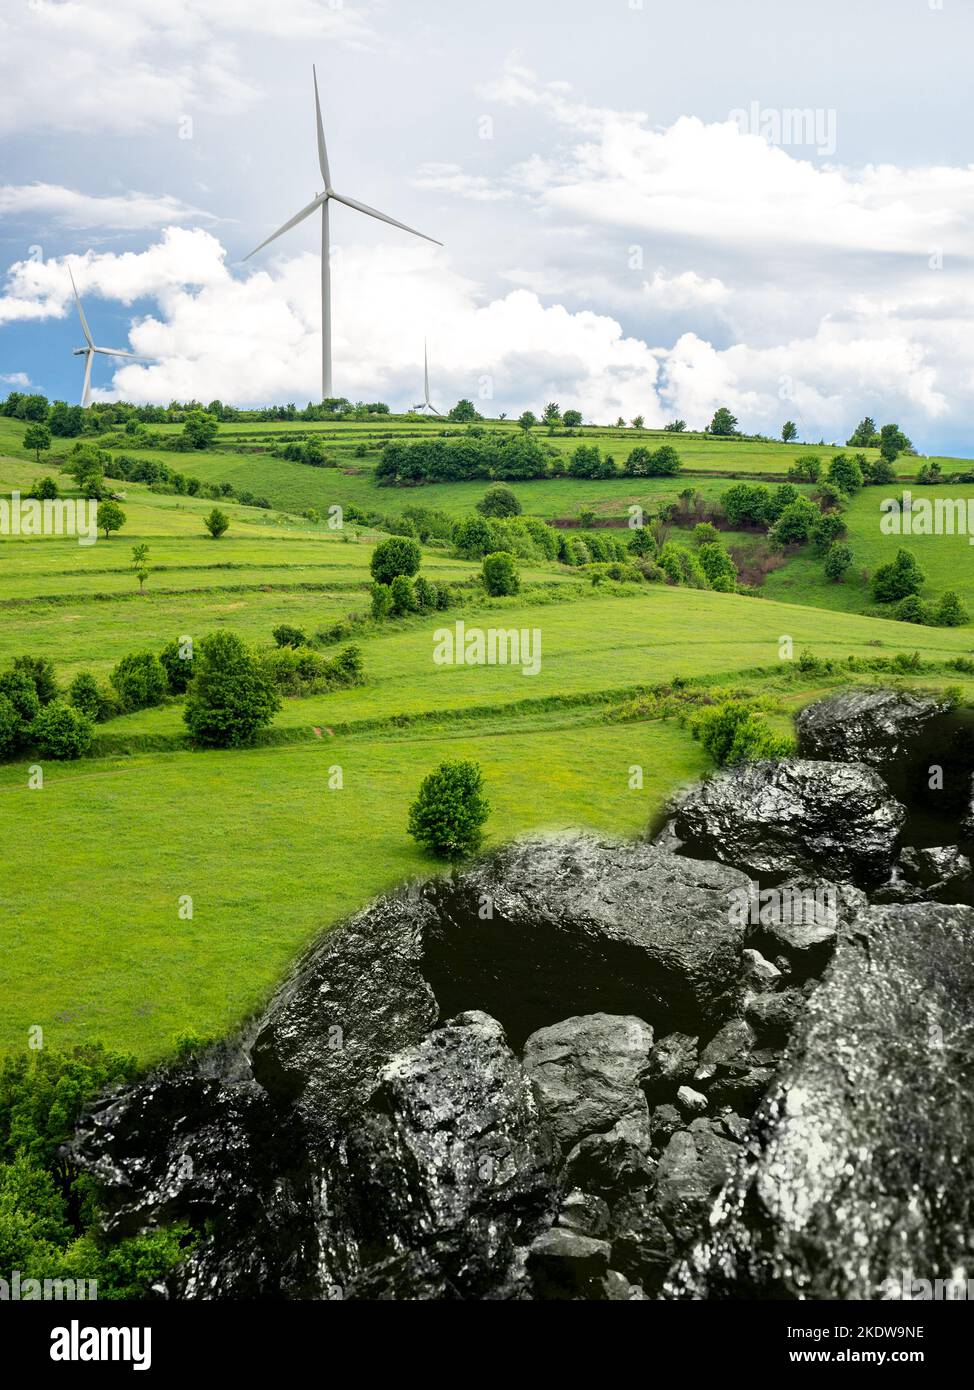 Windturbinen und Kohlerz, Energiewandelkonzept Stockfoto